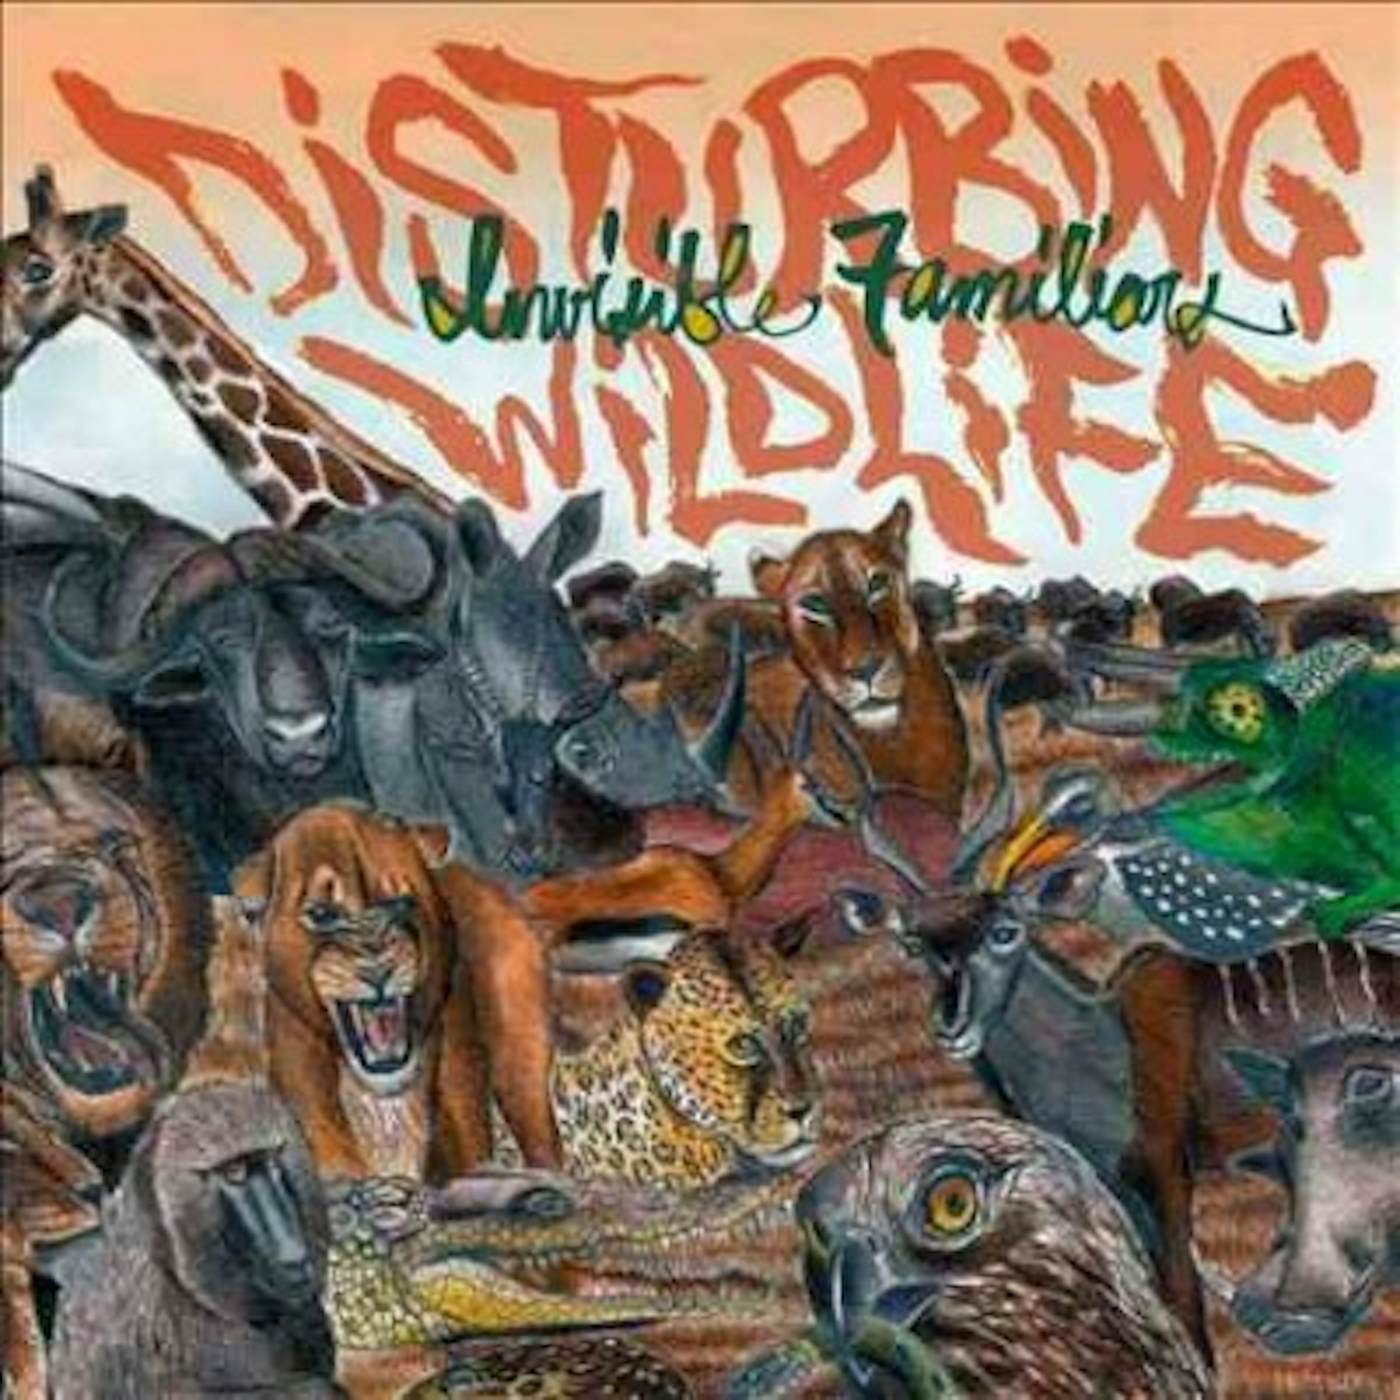 Invisible Familiars Disturbing Wildlife Vinyl Record